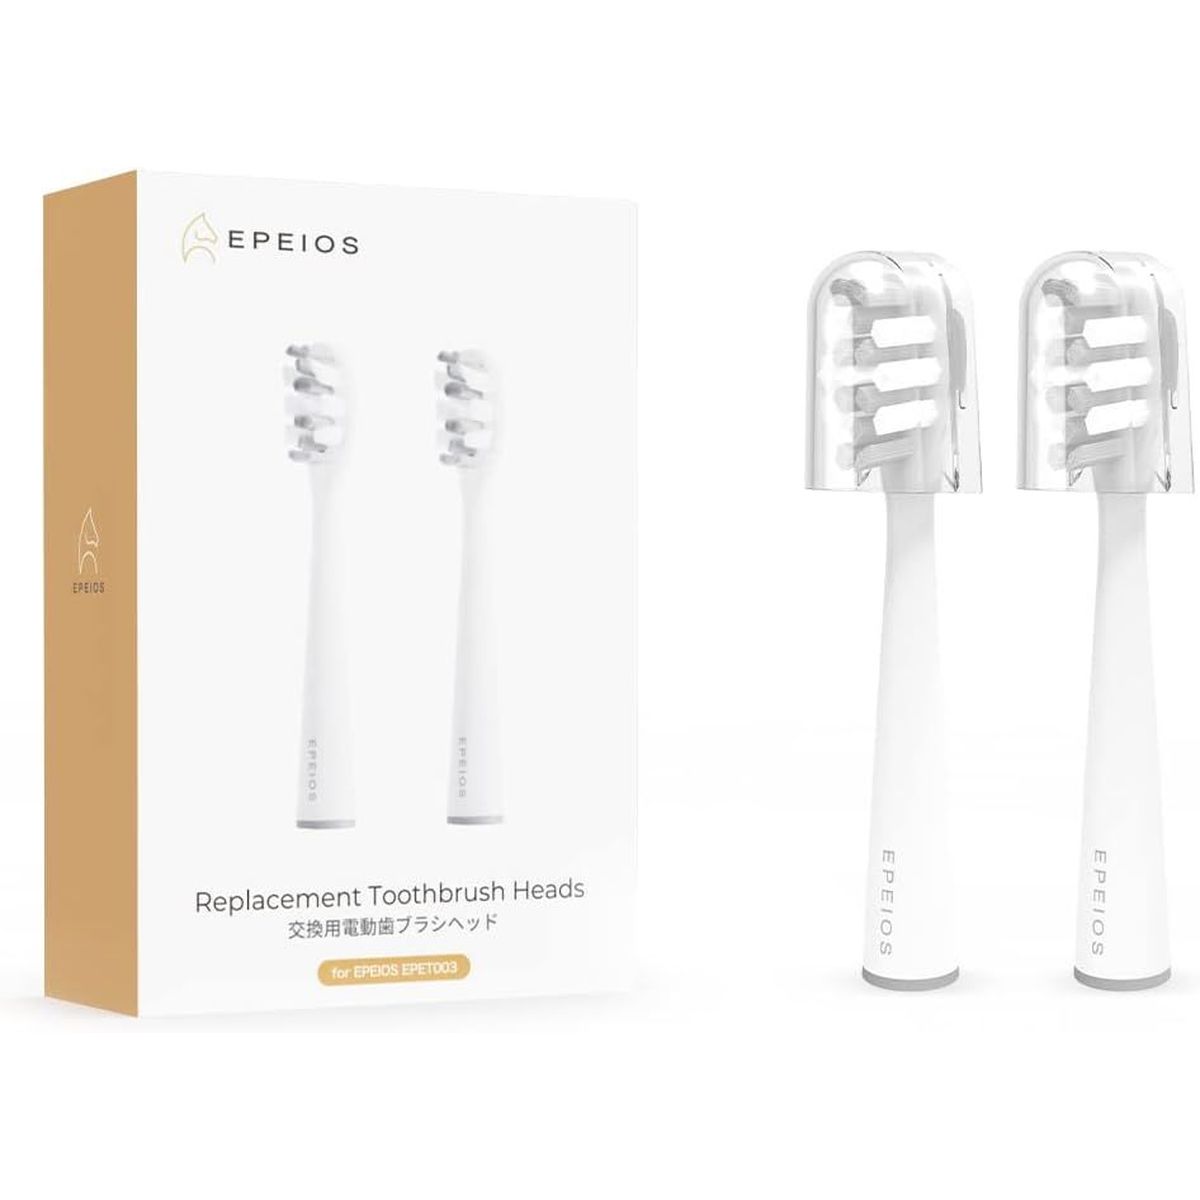 EPEIOS 音波式電動歯ブラシ 替ブラシヘッド 2本 レギュラーサイズ ホワイト